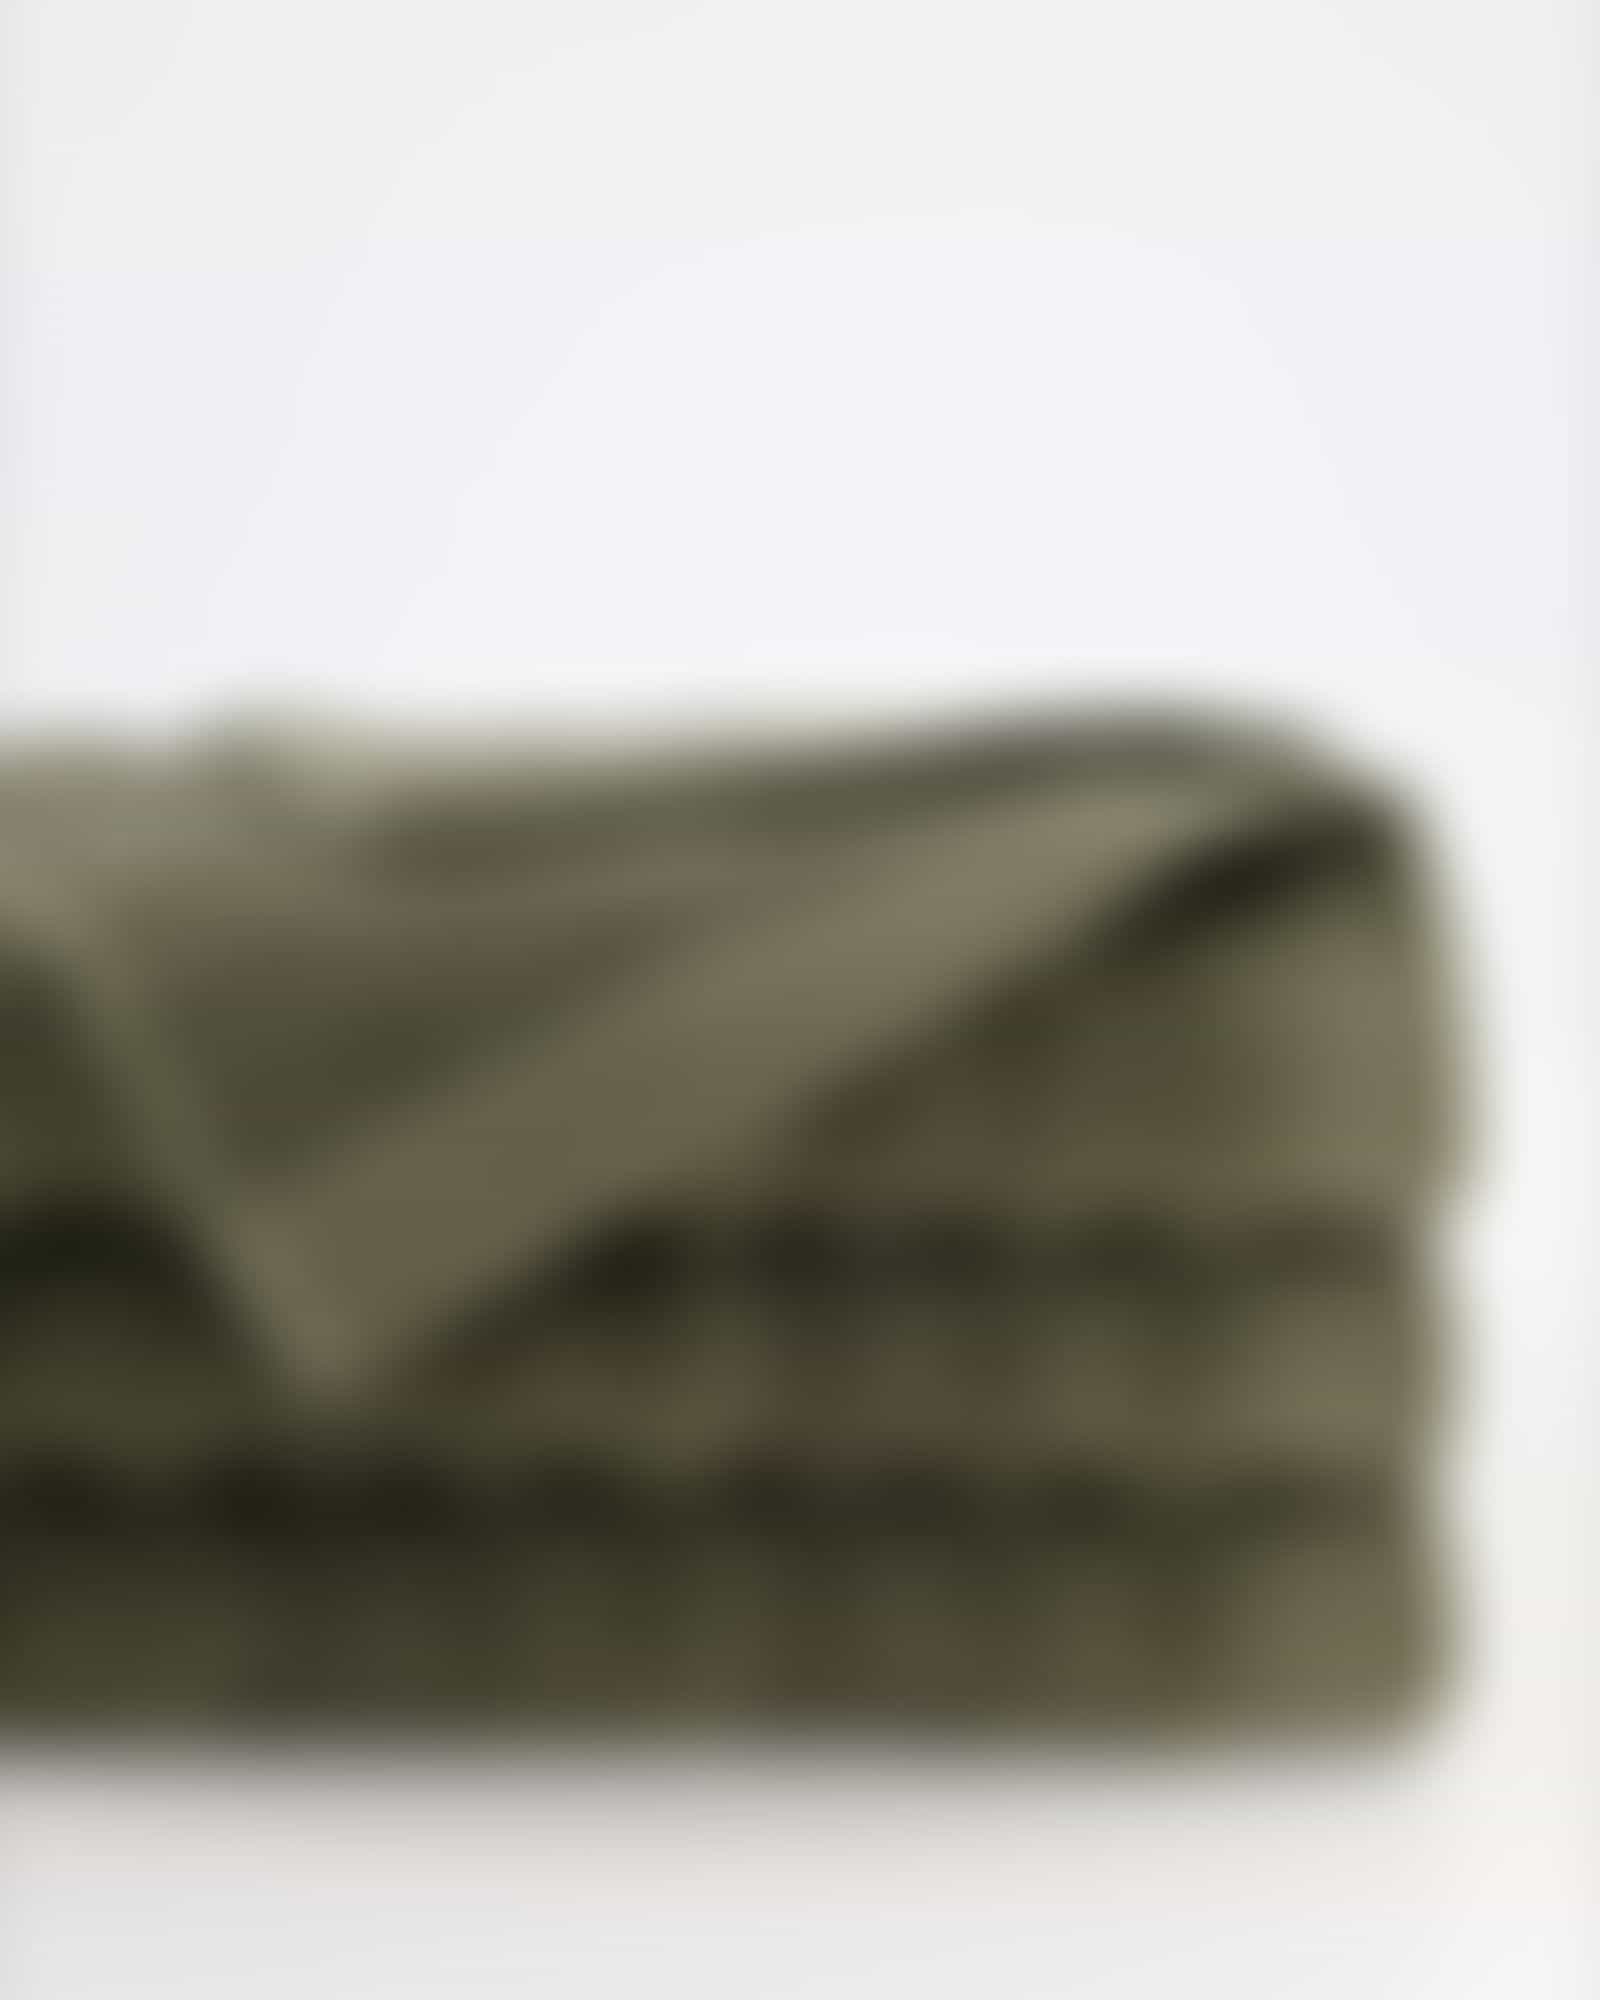 Möve Handtücher Wellbeing Wellenstruktur - Farbe: sea grass - 677 - Duschtuch 67x140 cm Detailbild 2